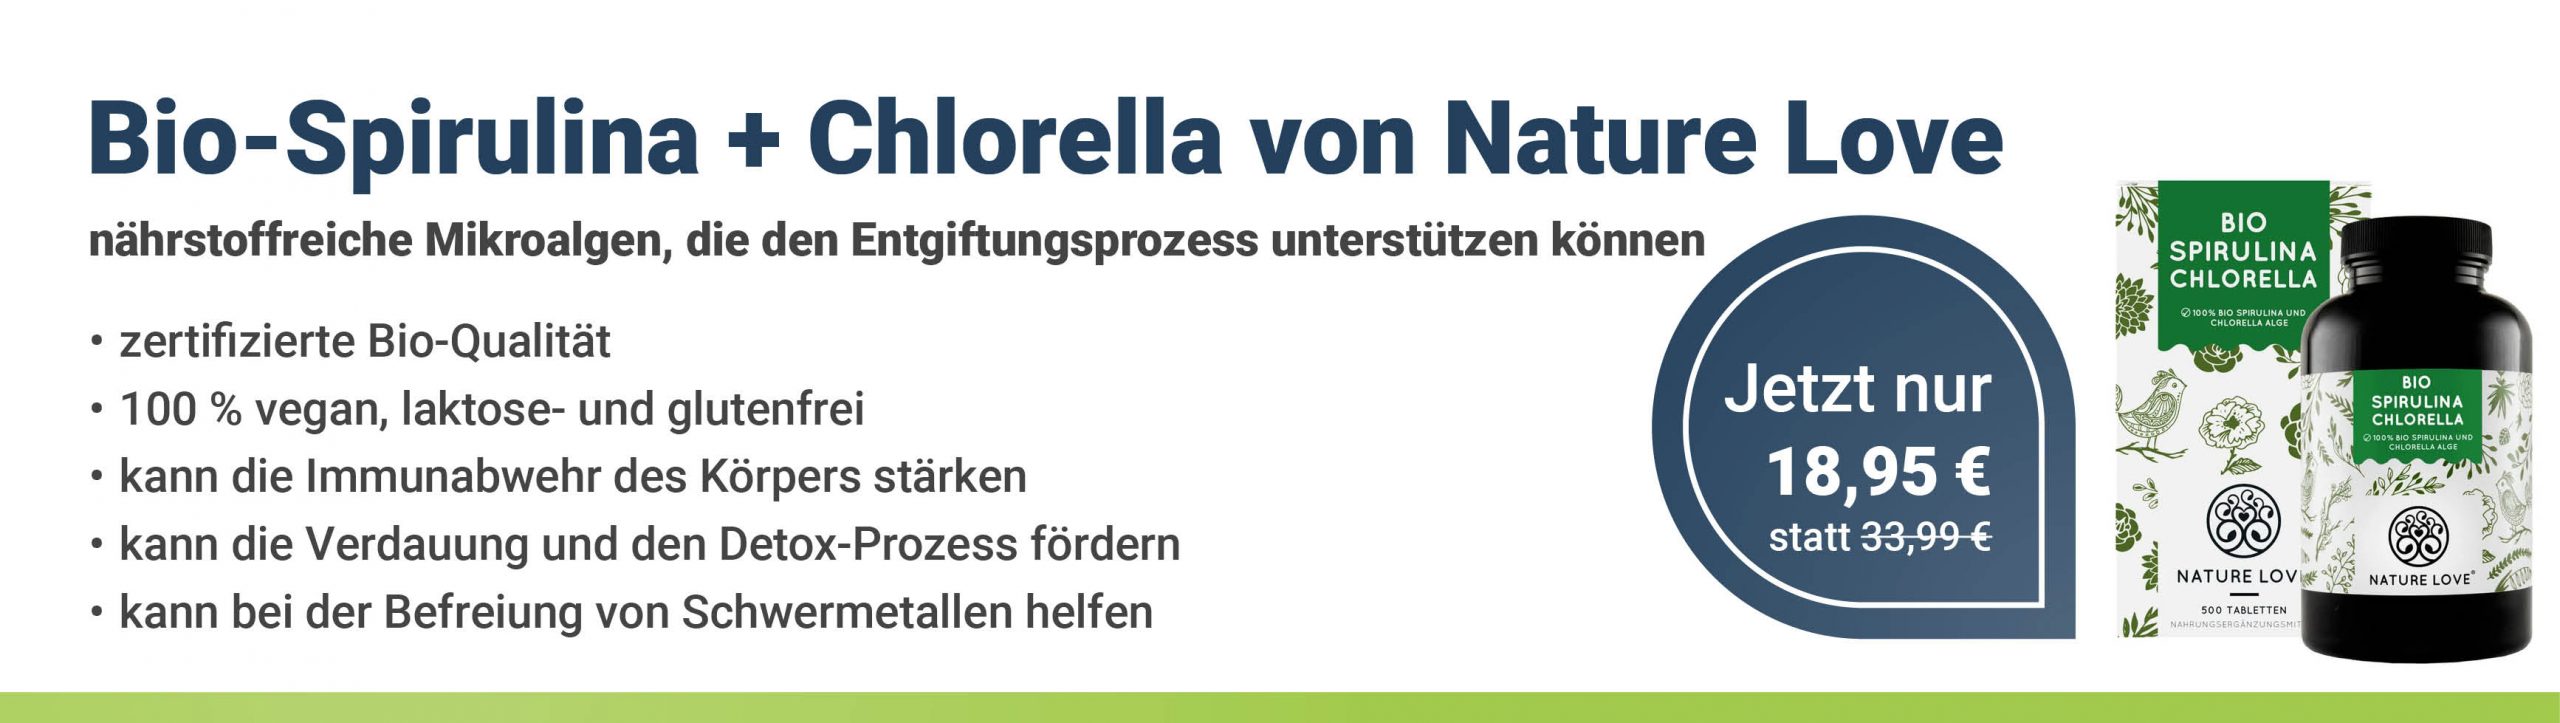 https://www.health-rise.de/wp-content/uploads/2021/12/Bio-Spirulina-Chlorella-von-Nature-Love_mobil.jpg